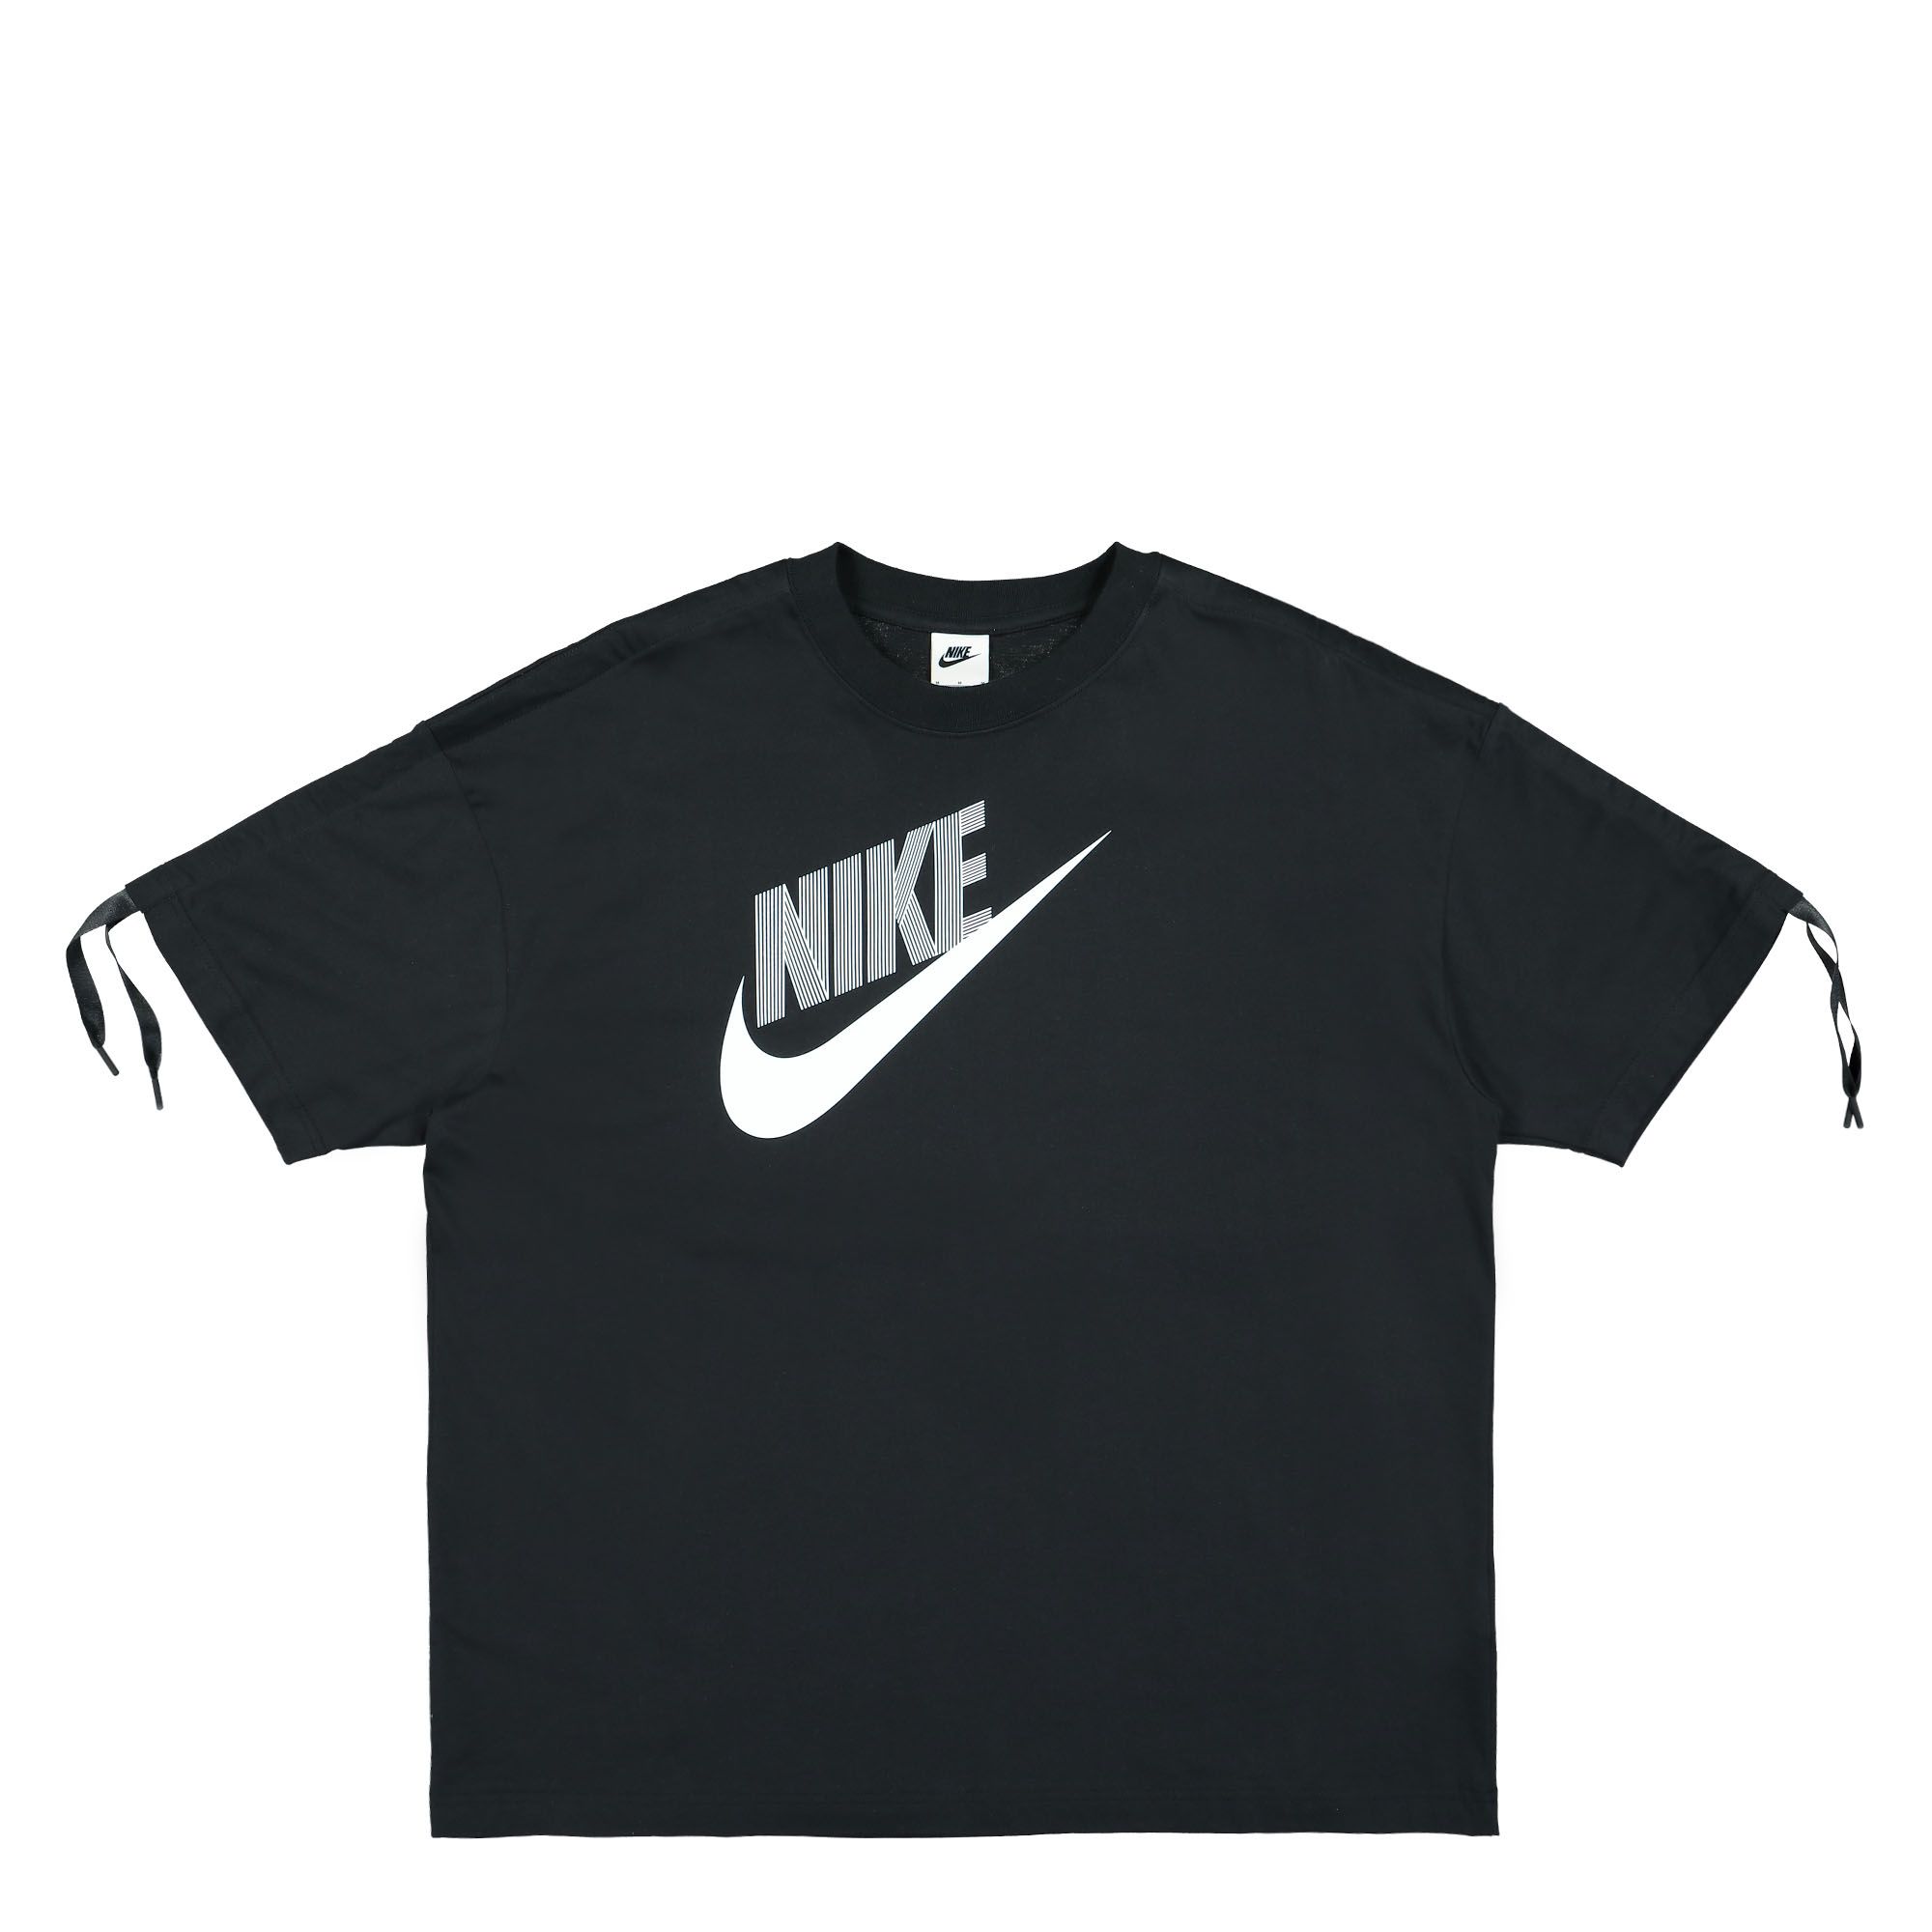 Nike Sportwear Women's Dance T-Shirt